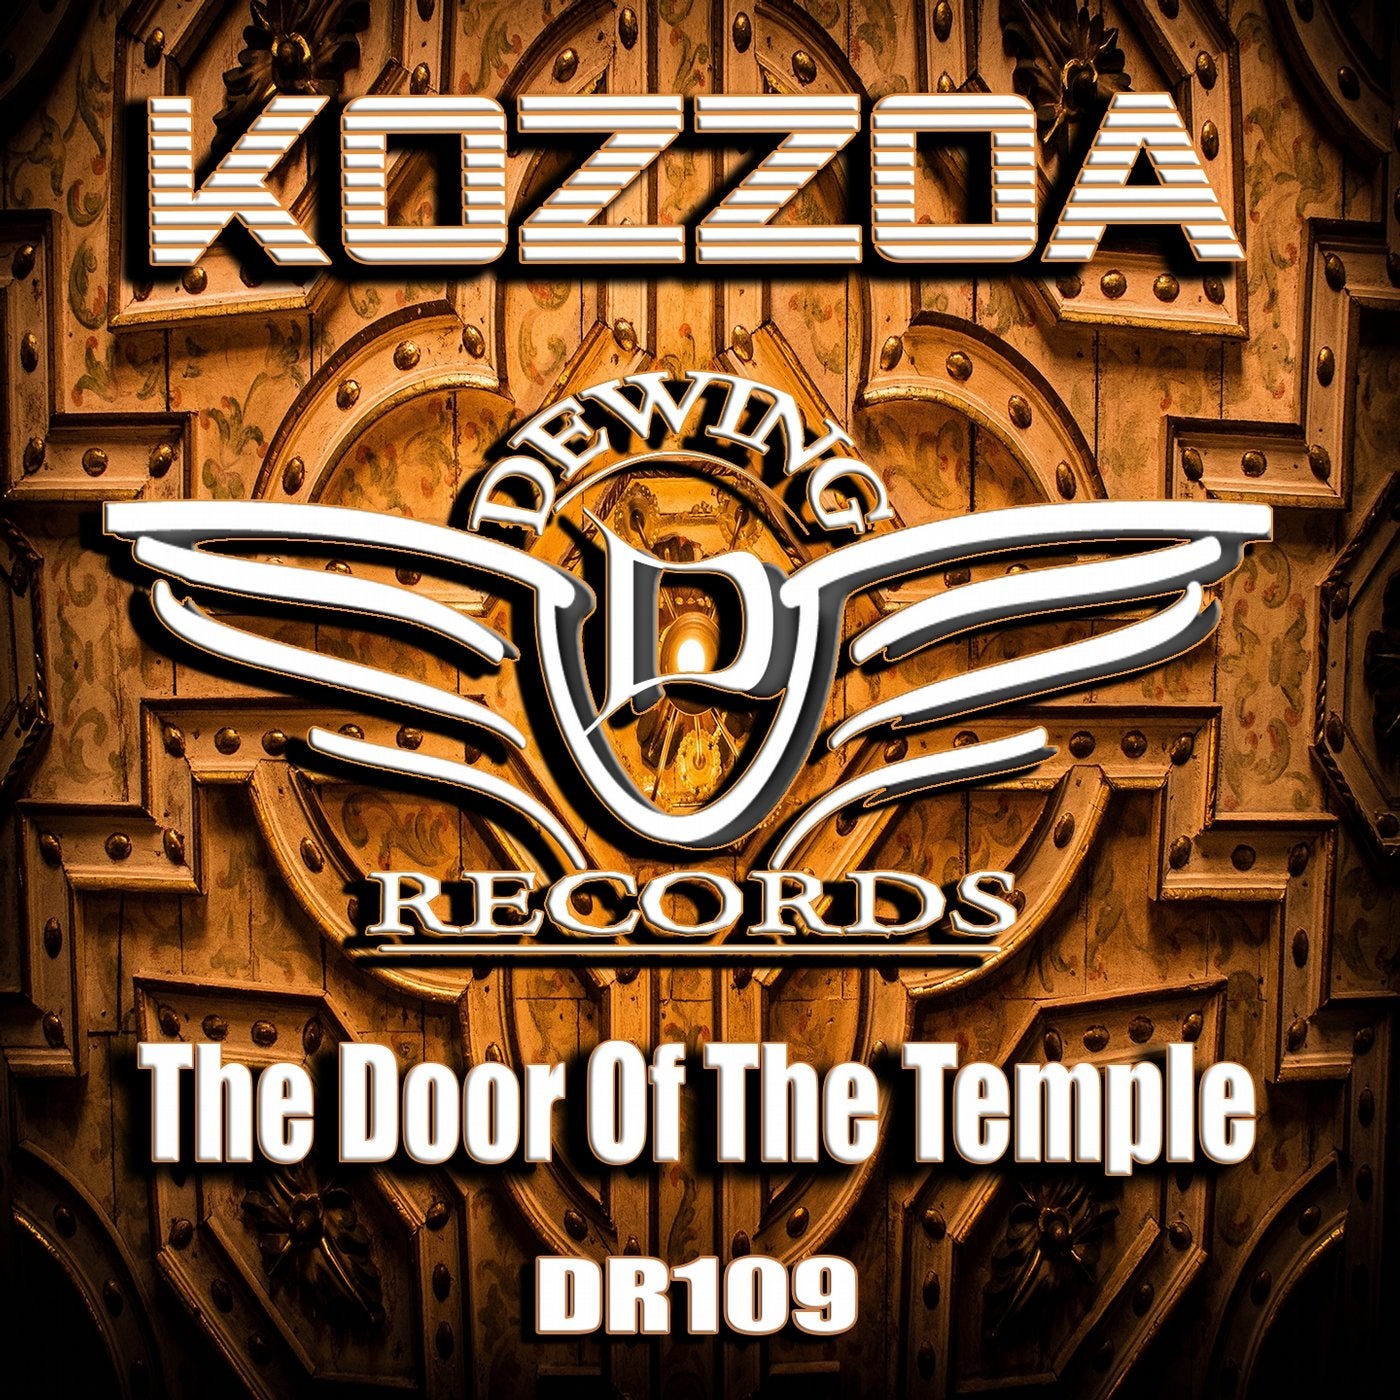 The Door of the Temple